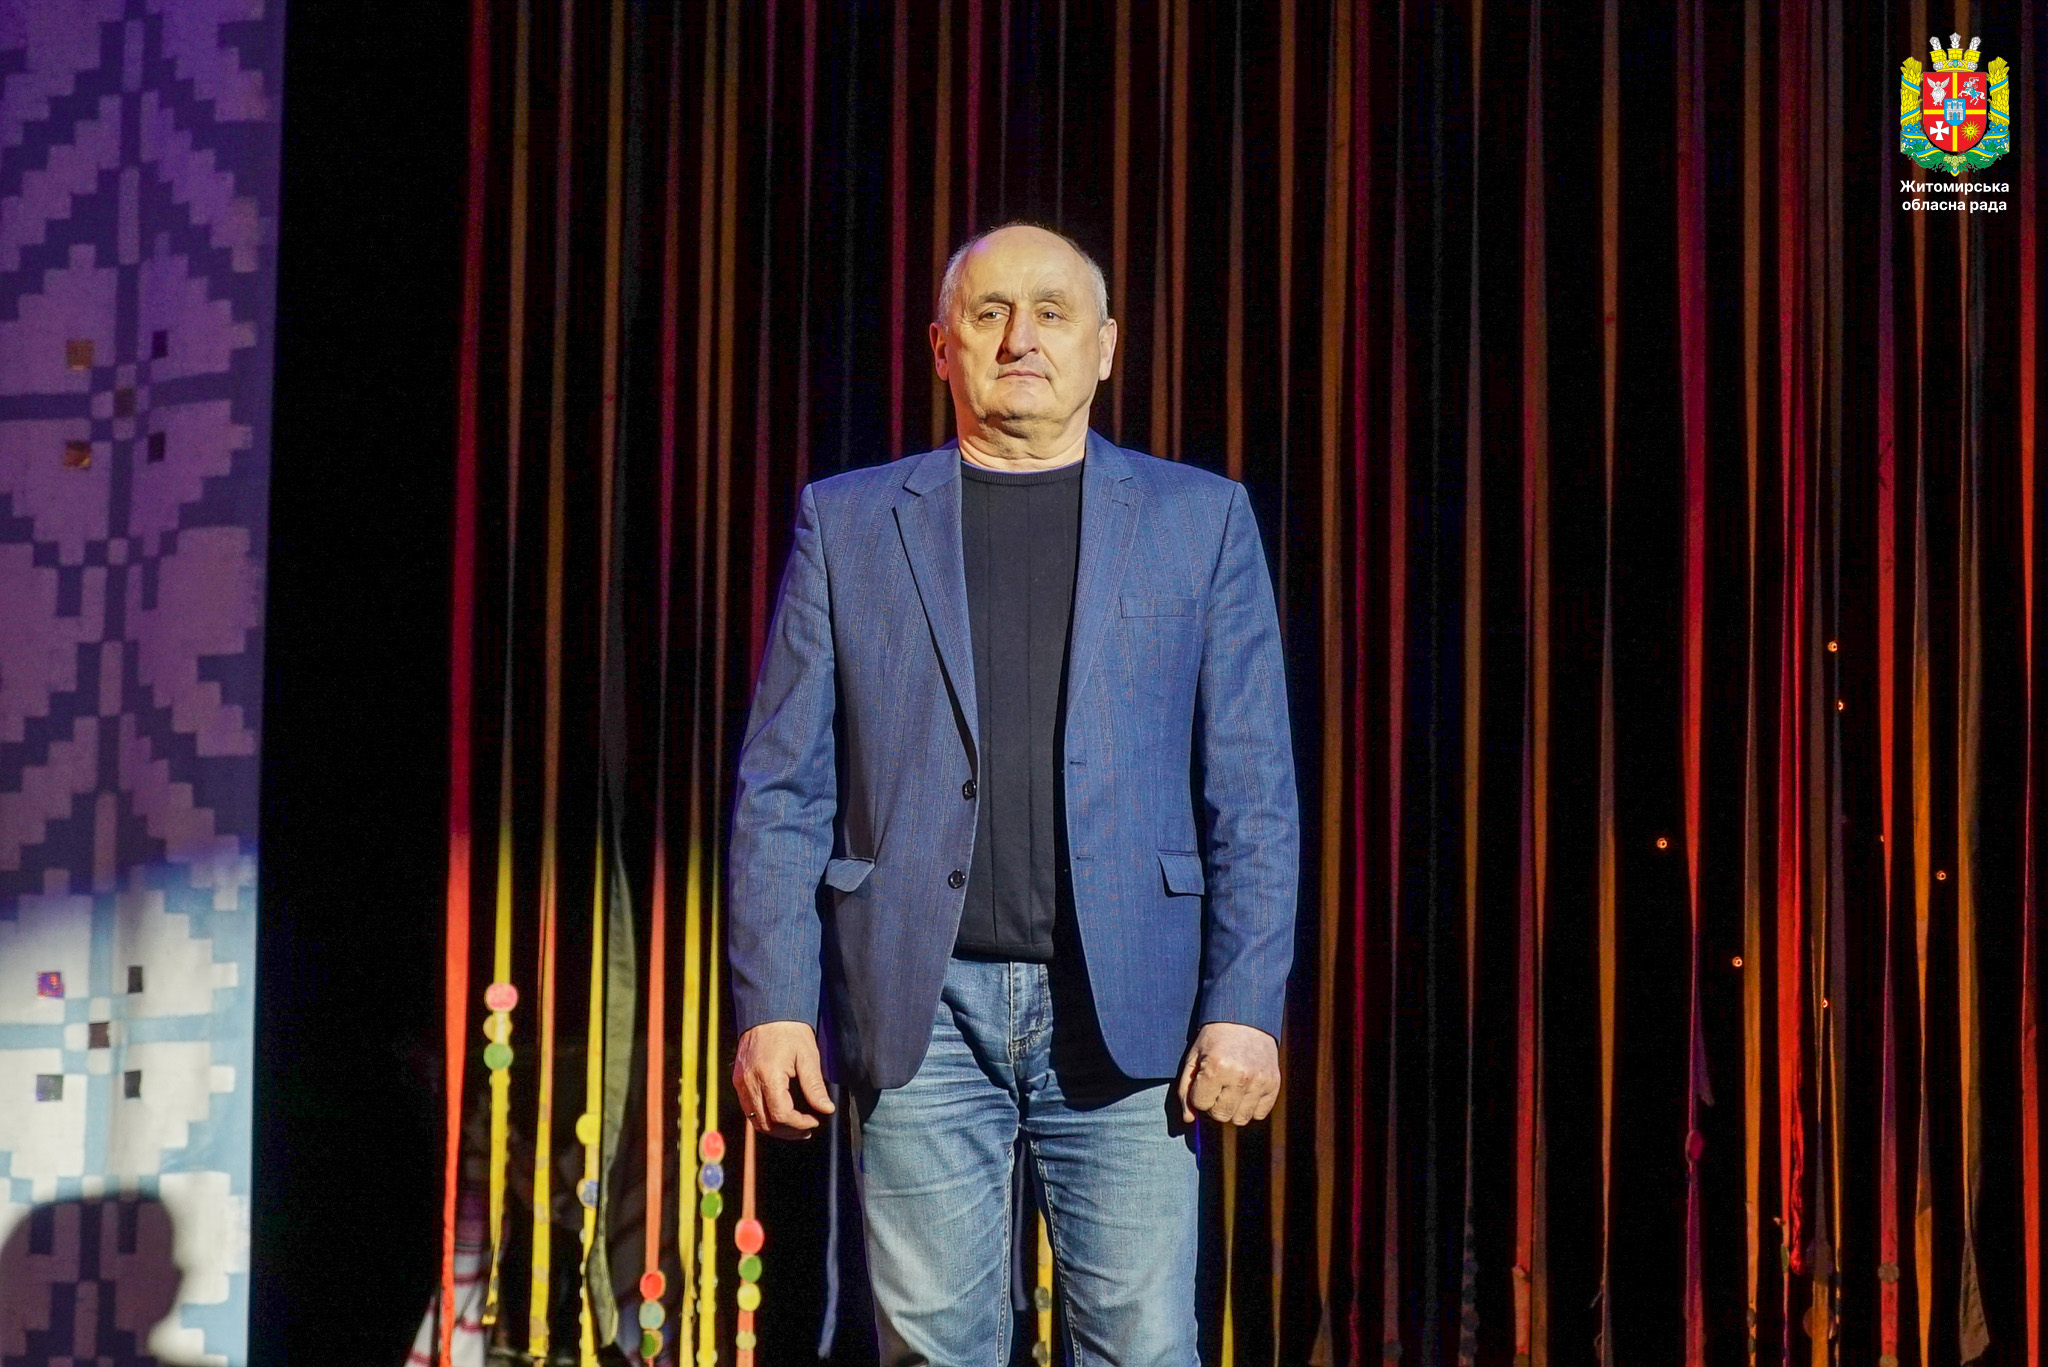 Володимир Ширма привітав митців сцени з Міжнародним днем театру